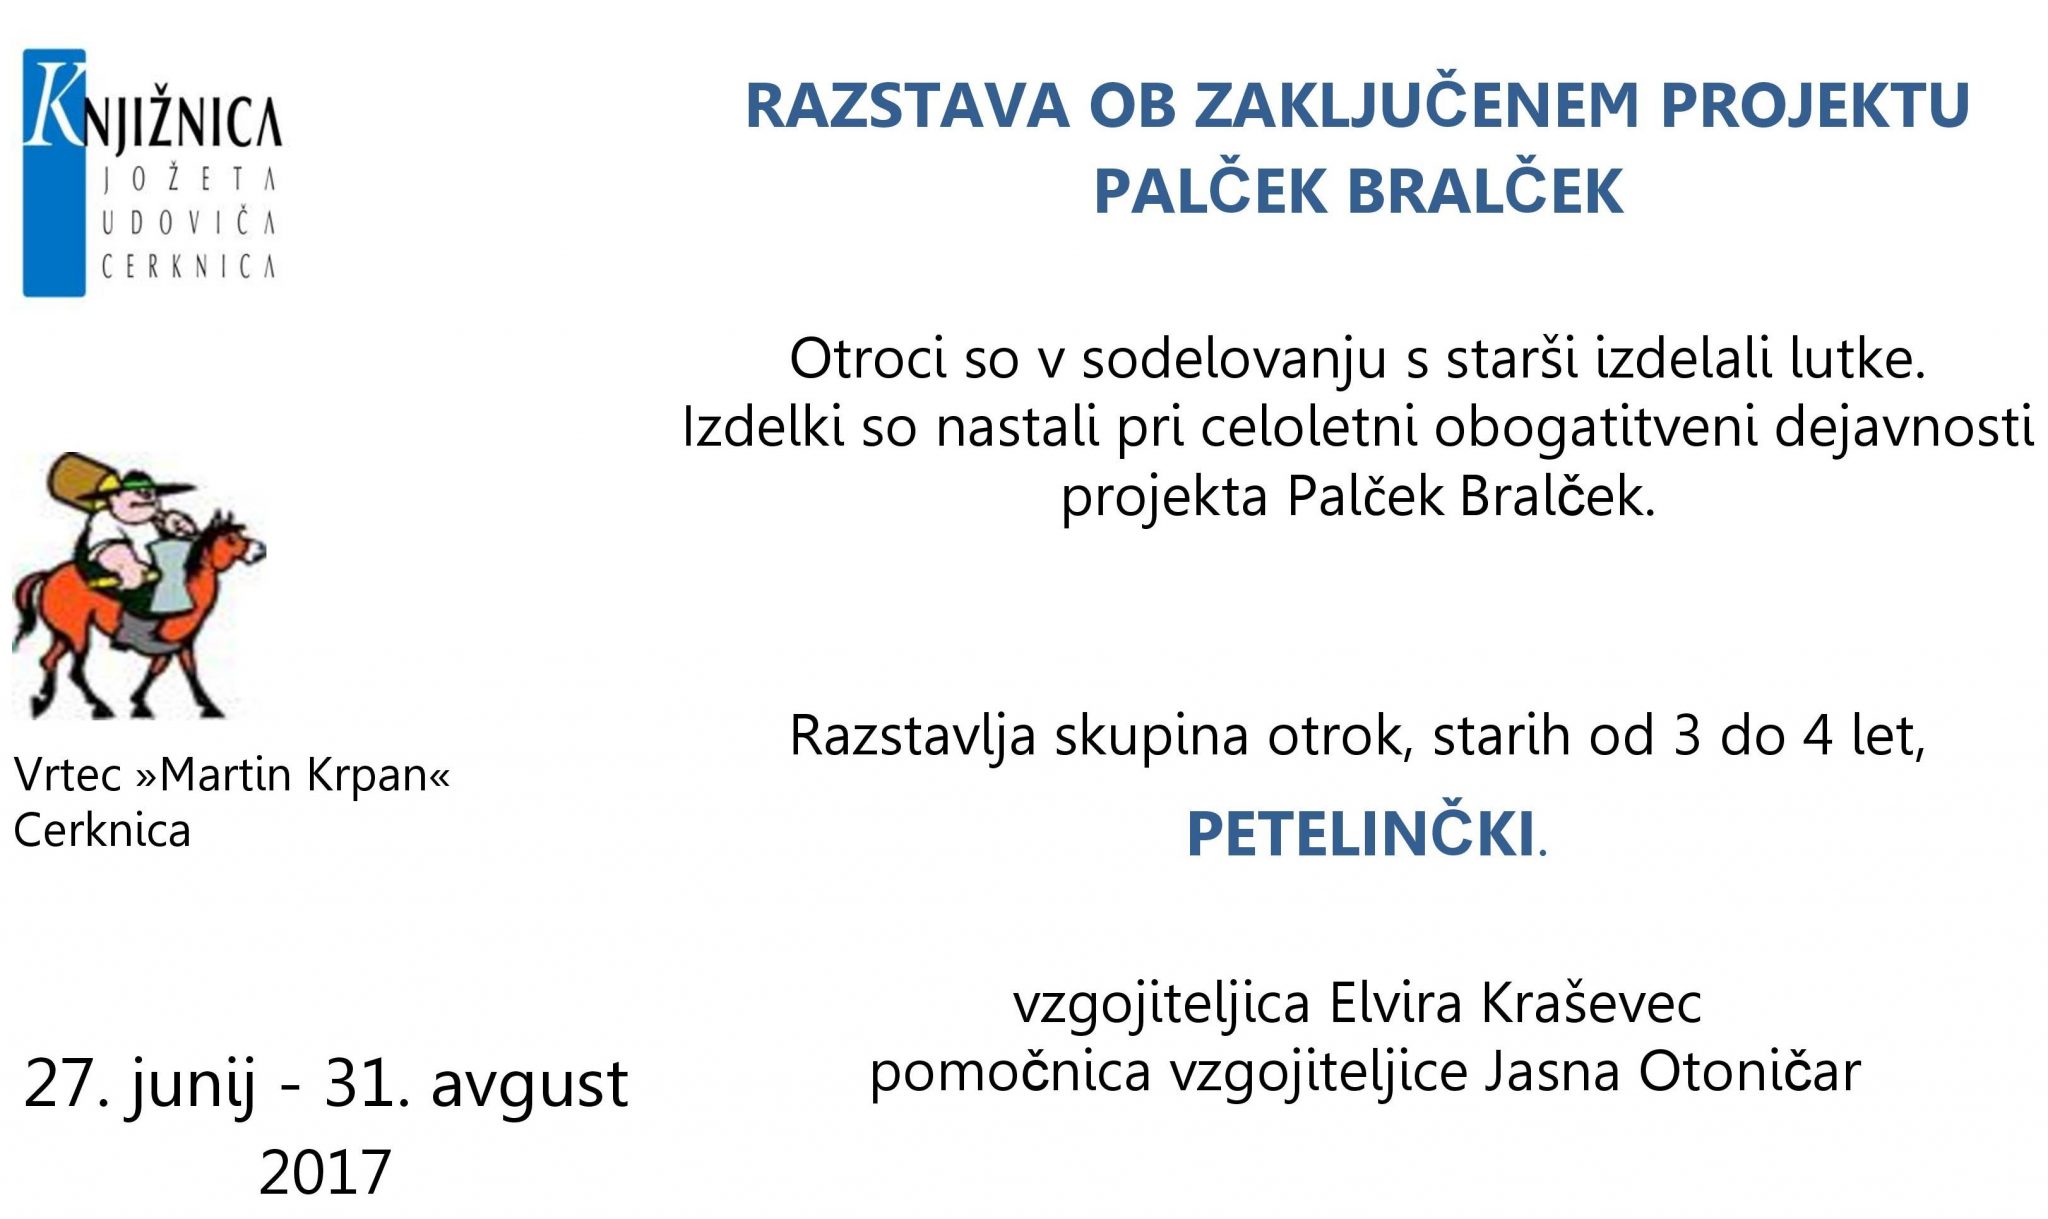 cover 1 - Razstava ob zaključenem projektu Palček Bralček